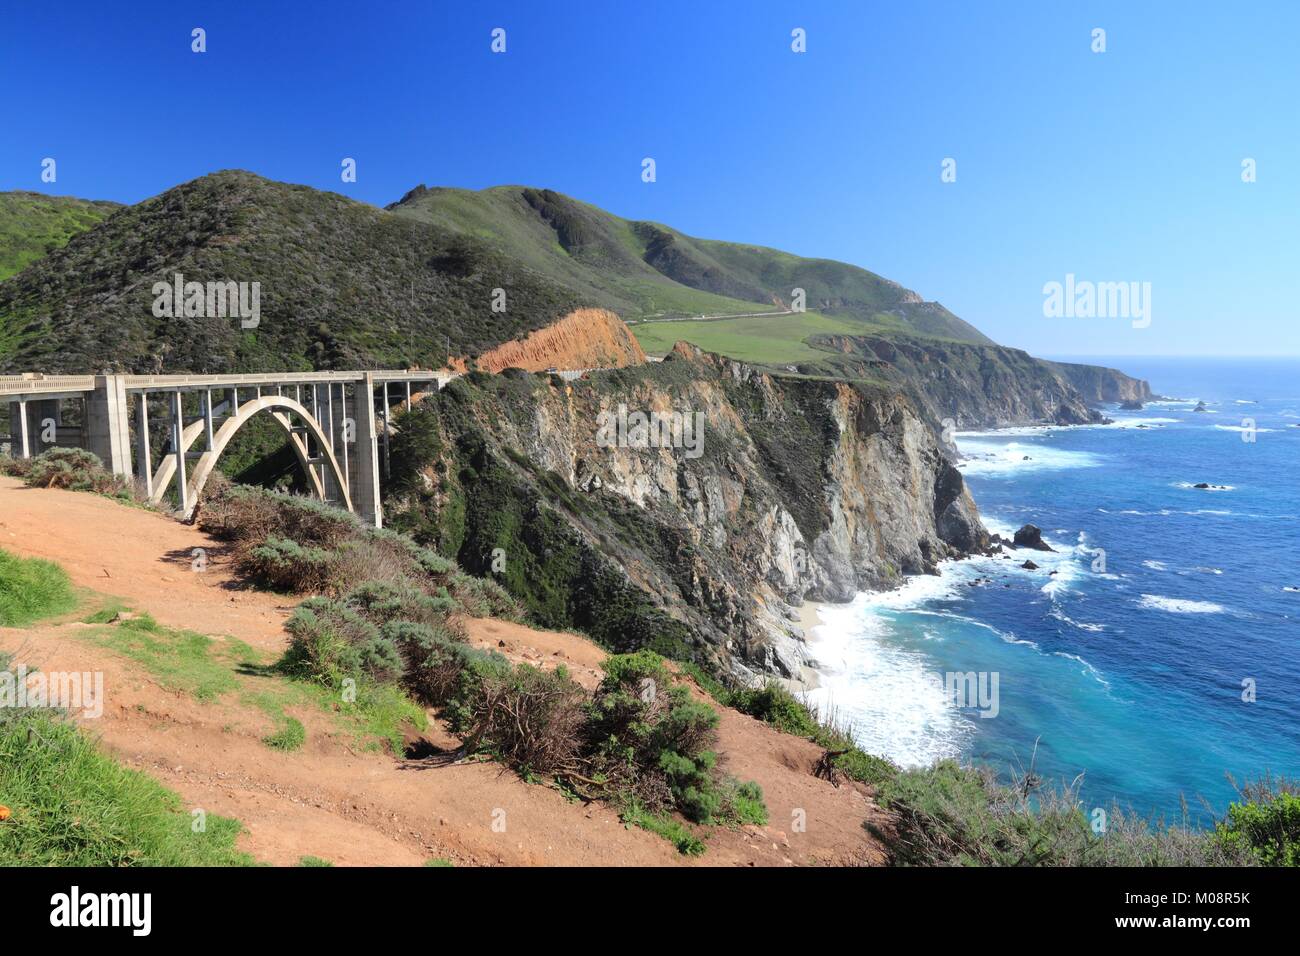 California, United States - Pacific Coast Highway scenic drive. Cabrillo Highway bridge. Stock Photo